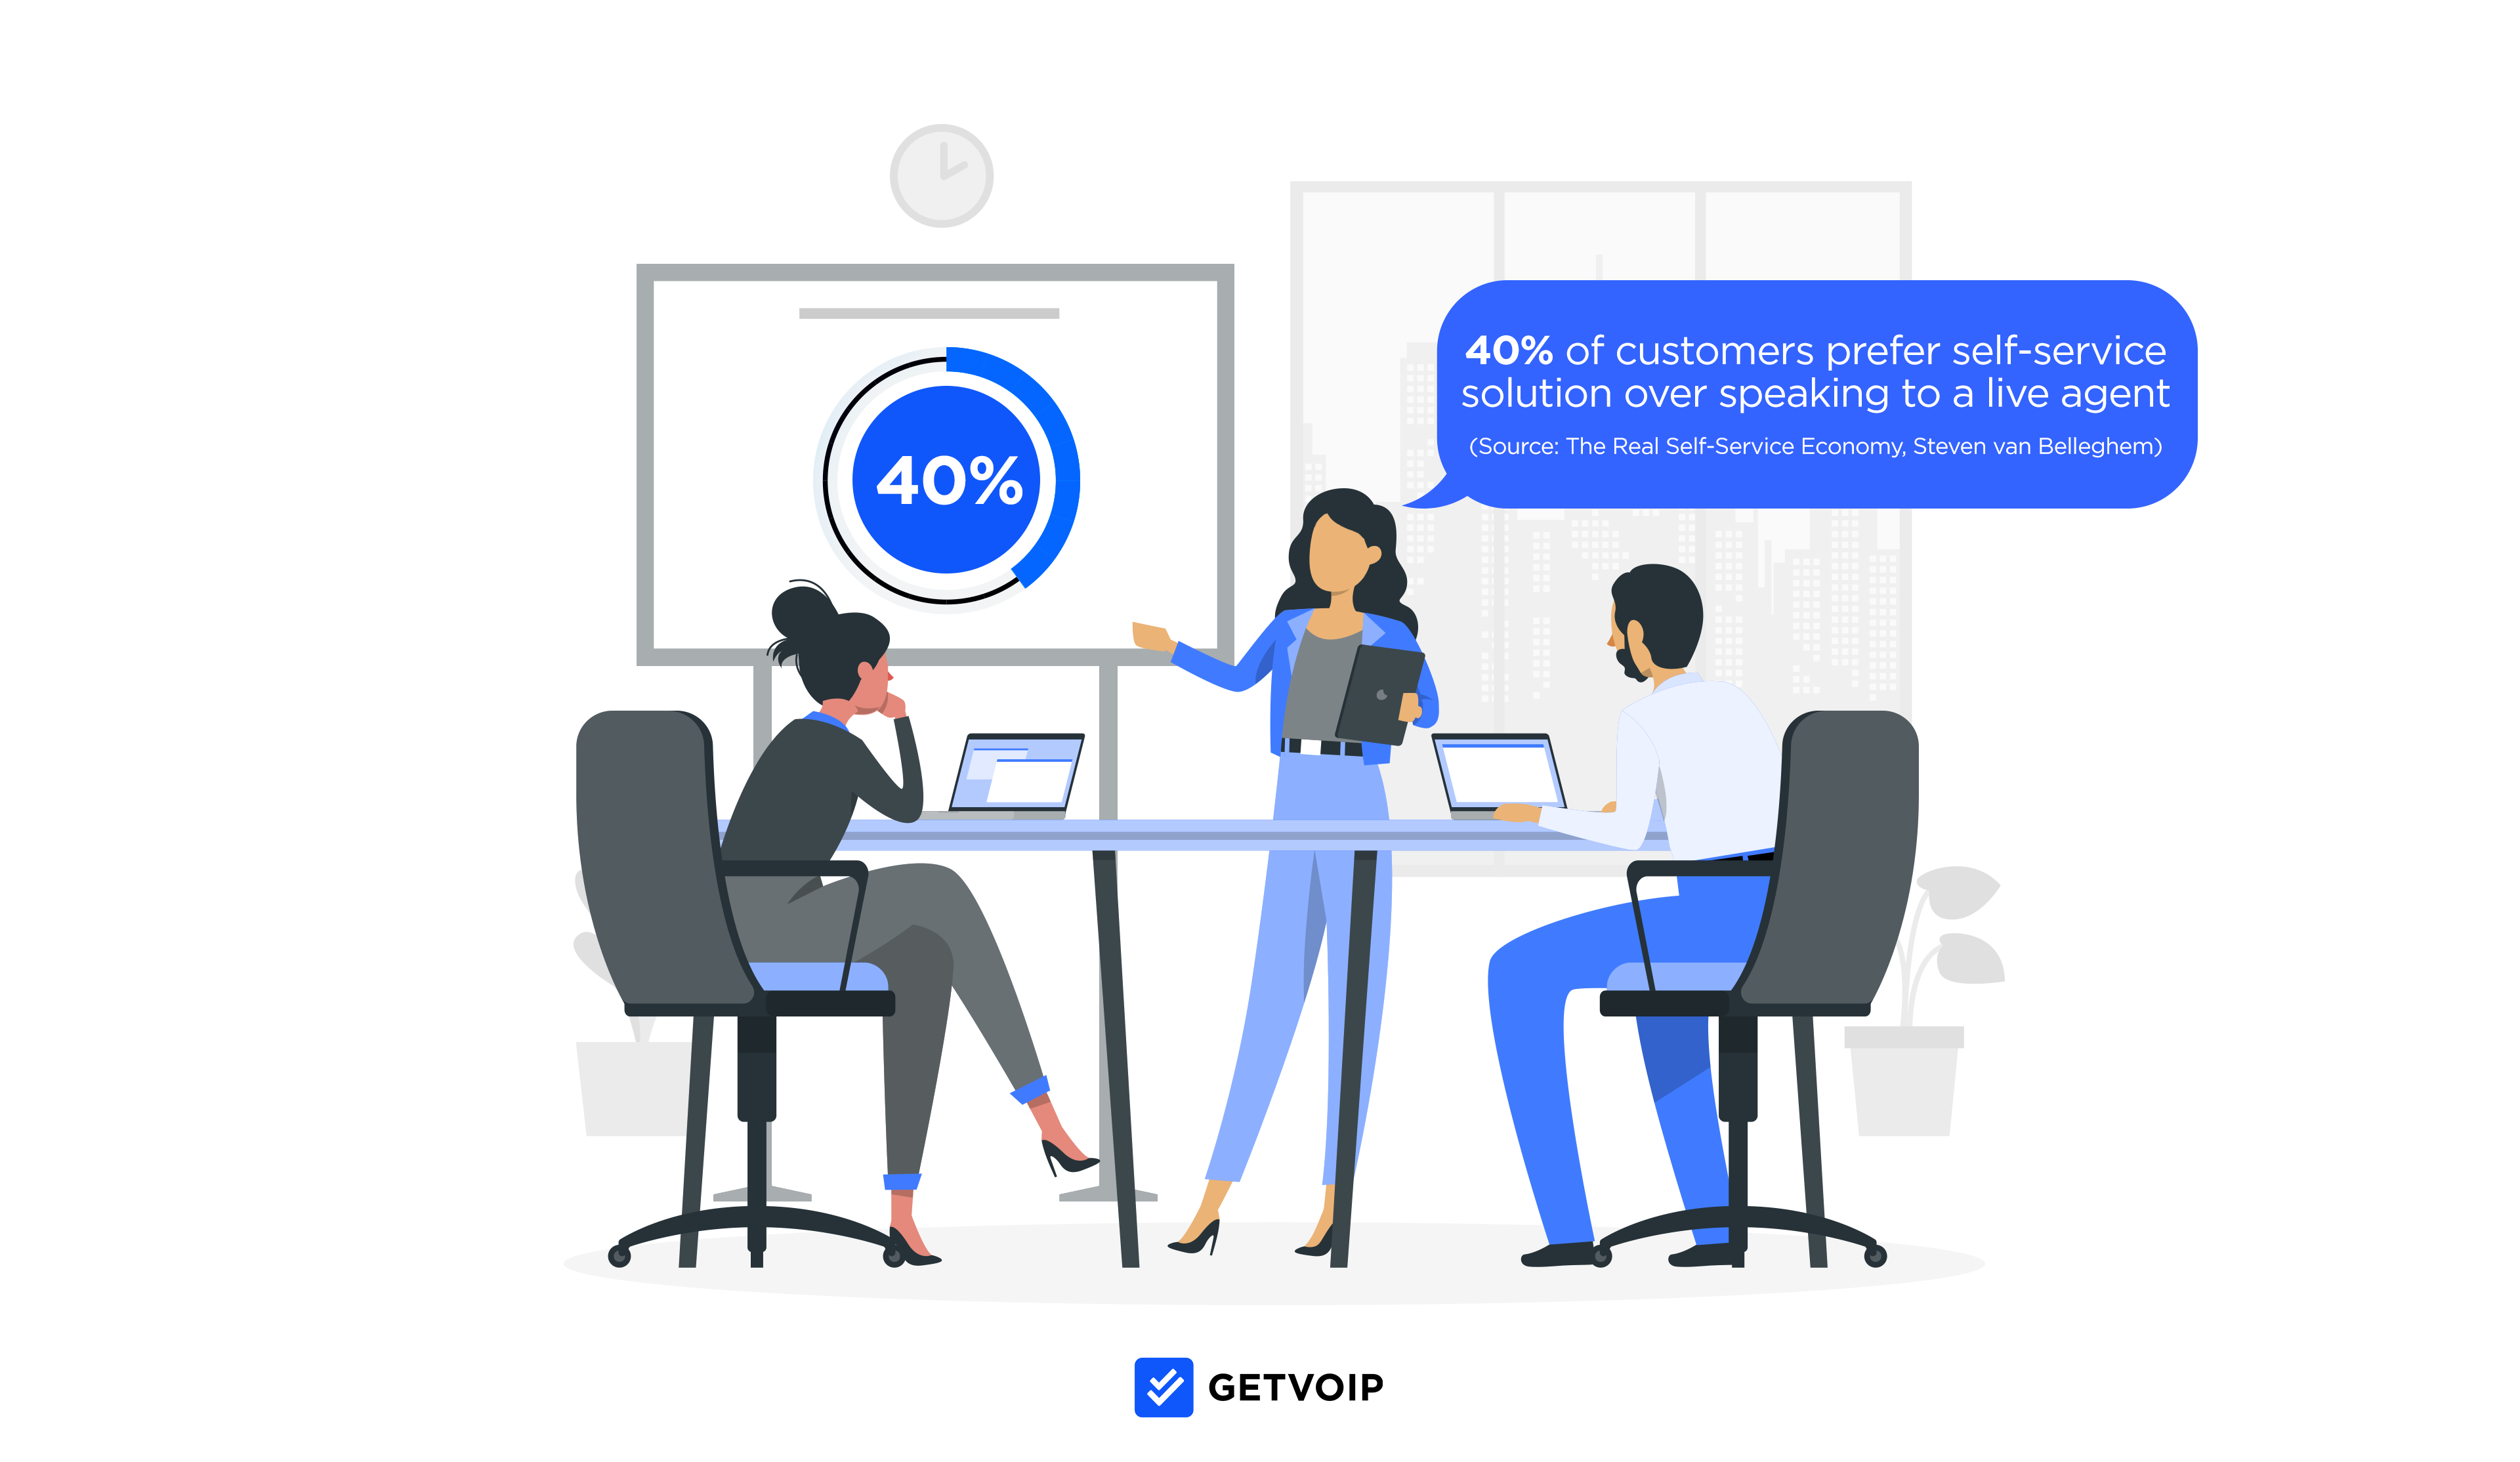 고객의 40%는 실시간 상담원과 대화하는 것보다 셀프 서비스 솔루션을 선호합니다.